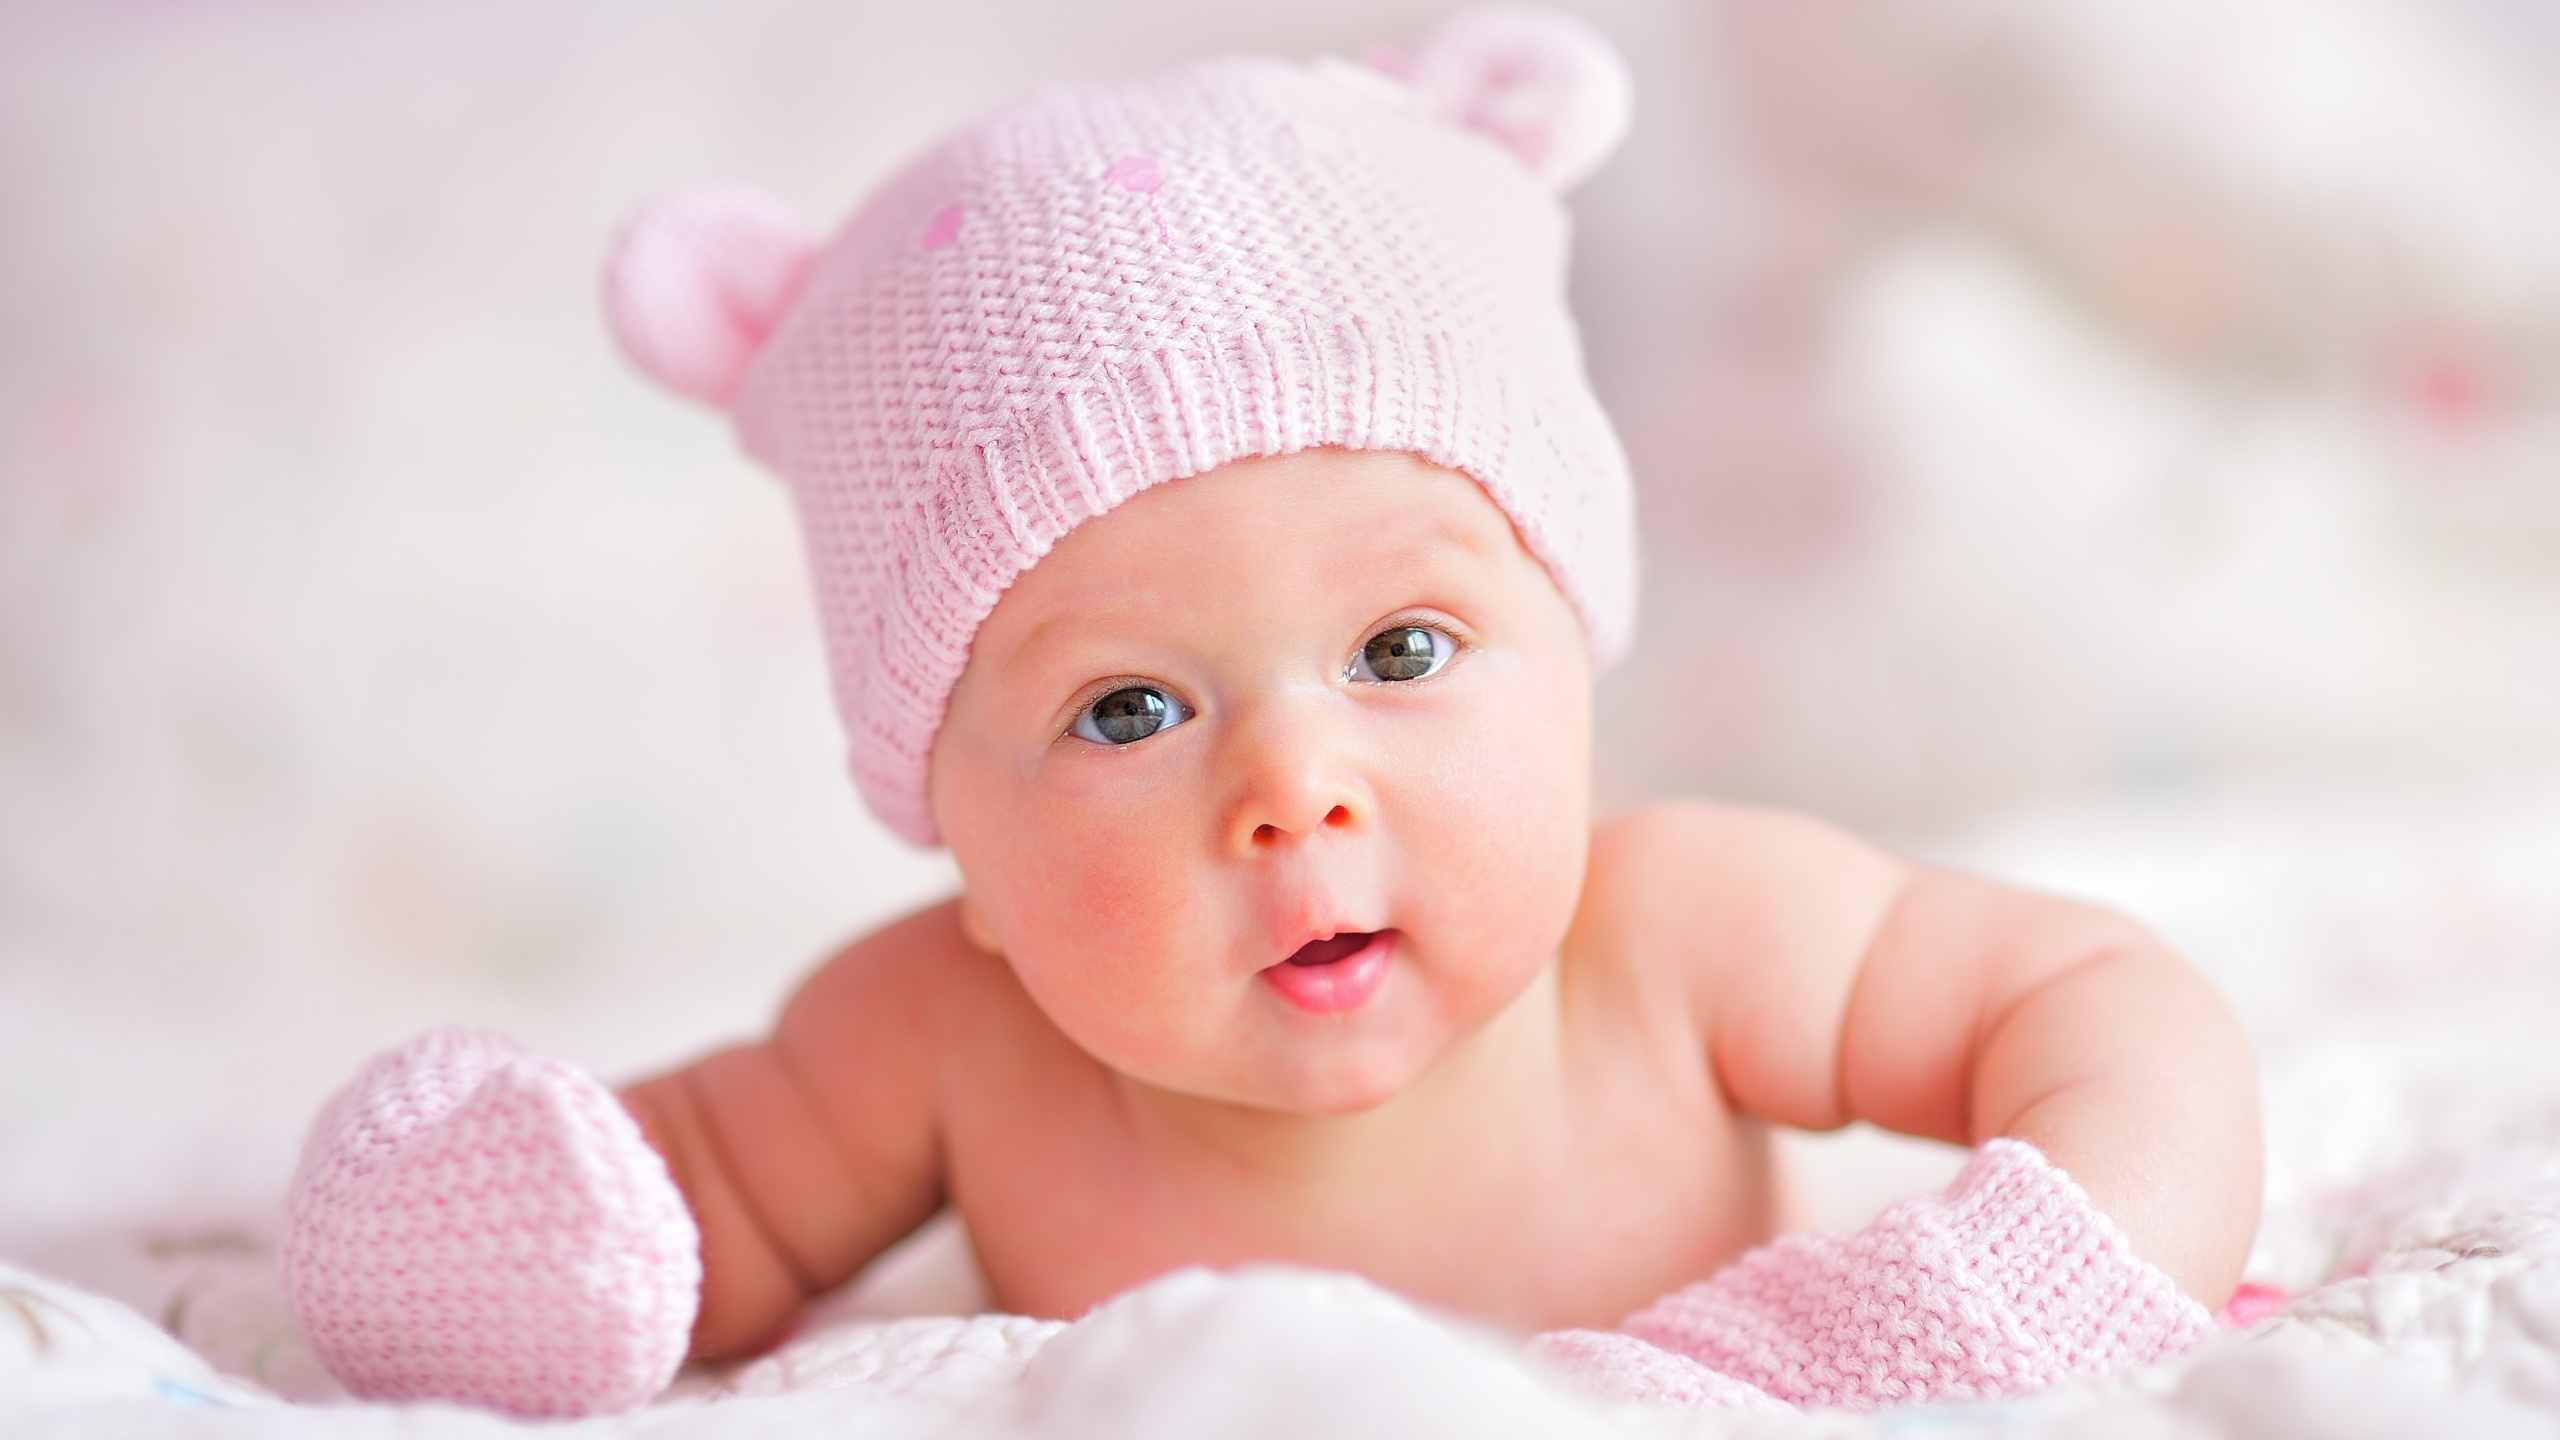 婴儿, 儿童, 粉红色, 皮肤, 女孩 壁纸 2560x1440 允许